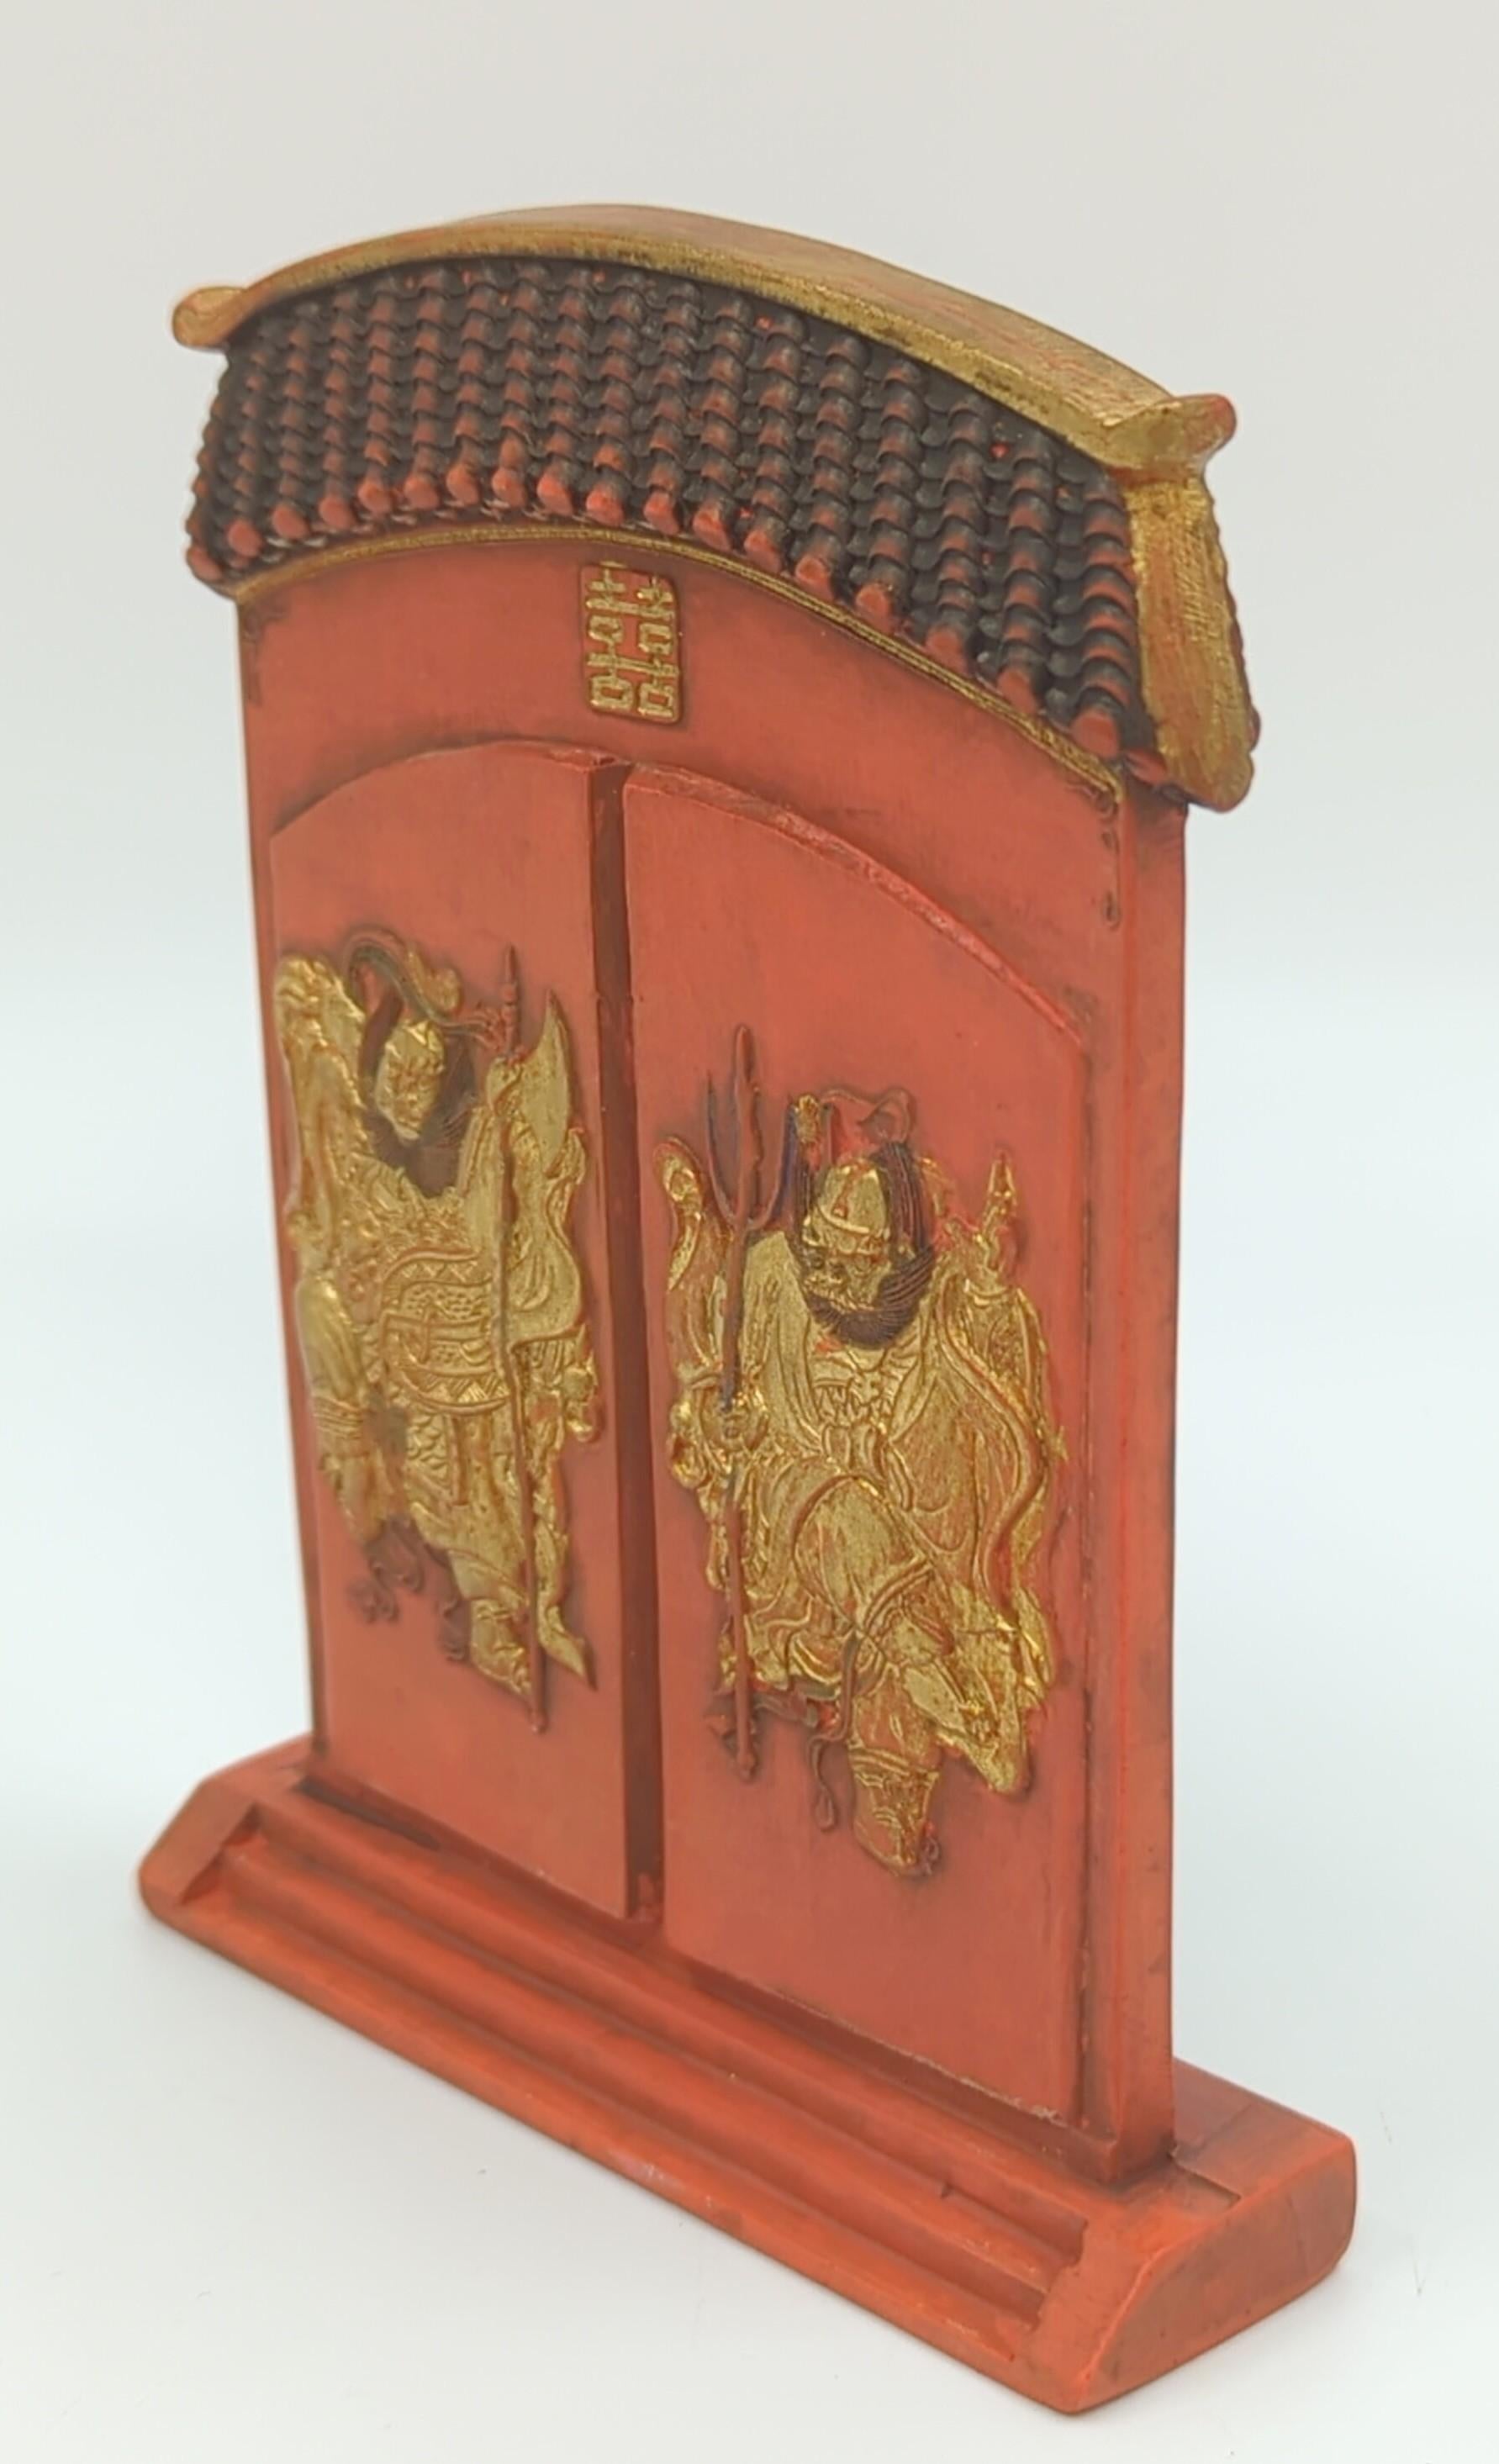 Eine seltene antike chinesische Qing-Dynastie Guangxu Periode kaiserlichen Stil markiert rote Tinte Stick, in Form eines Daches geflieste Doppeltür Eingang, mit zwei grimmigen Wächter Dieties in detaillierten Flachrelief geschnitzt, eine auf jeder